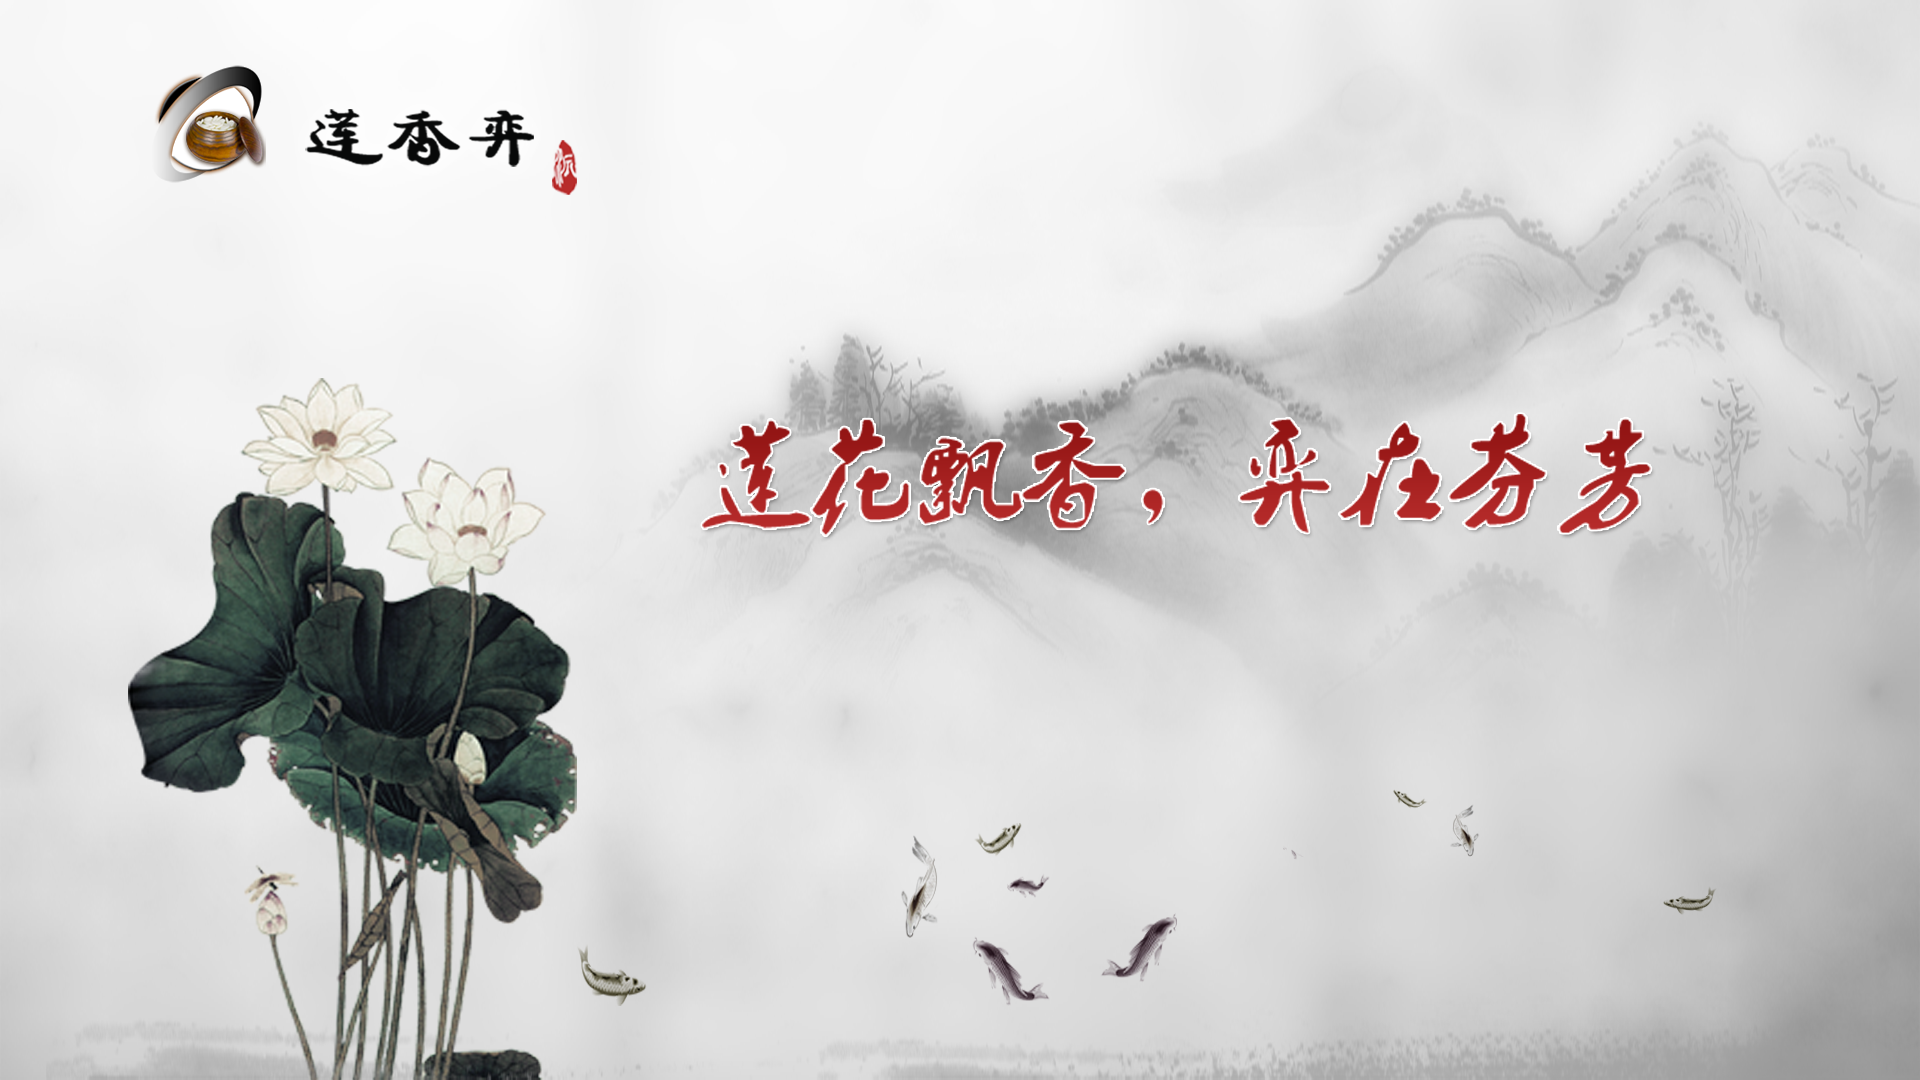 Banner of लियान जियांग गो की भूमिका निभाते हैं 8.20.26